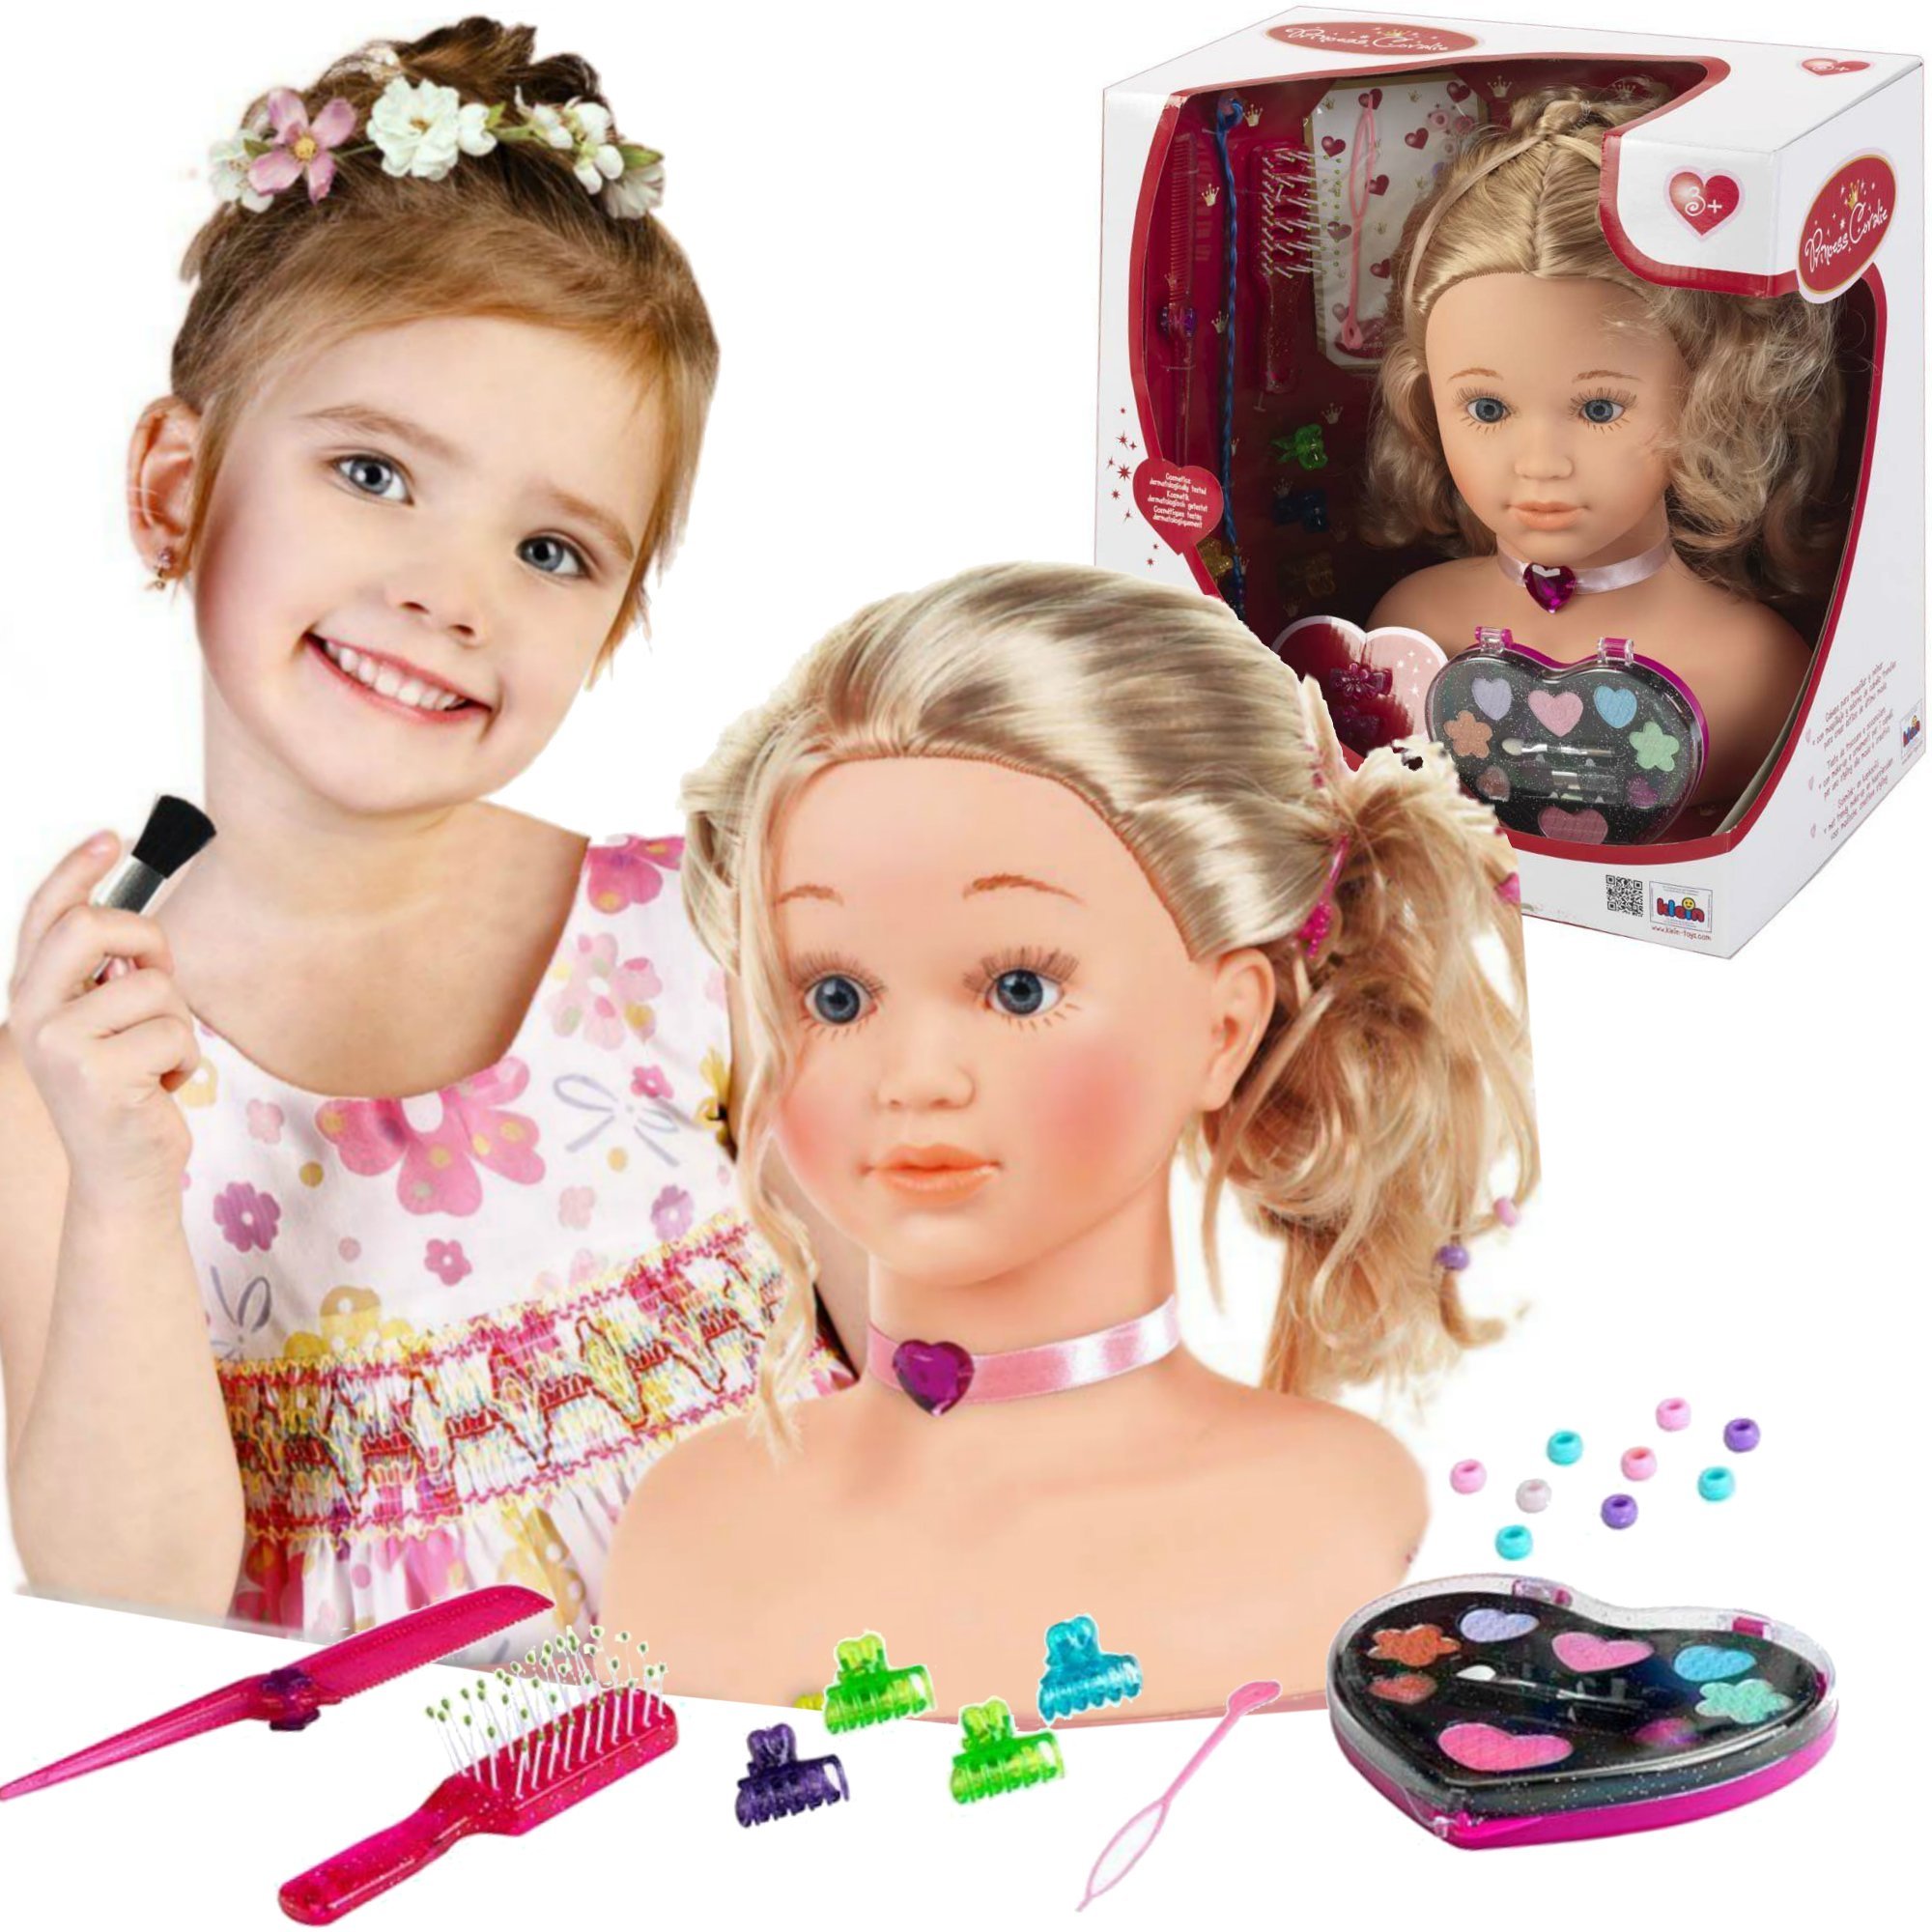 Du¿a Lalka G³owa do czesania stylizacji makija¿u Fryzjer Princess Coralie dla dzieci + akcesoria Klein